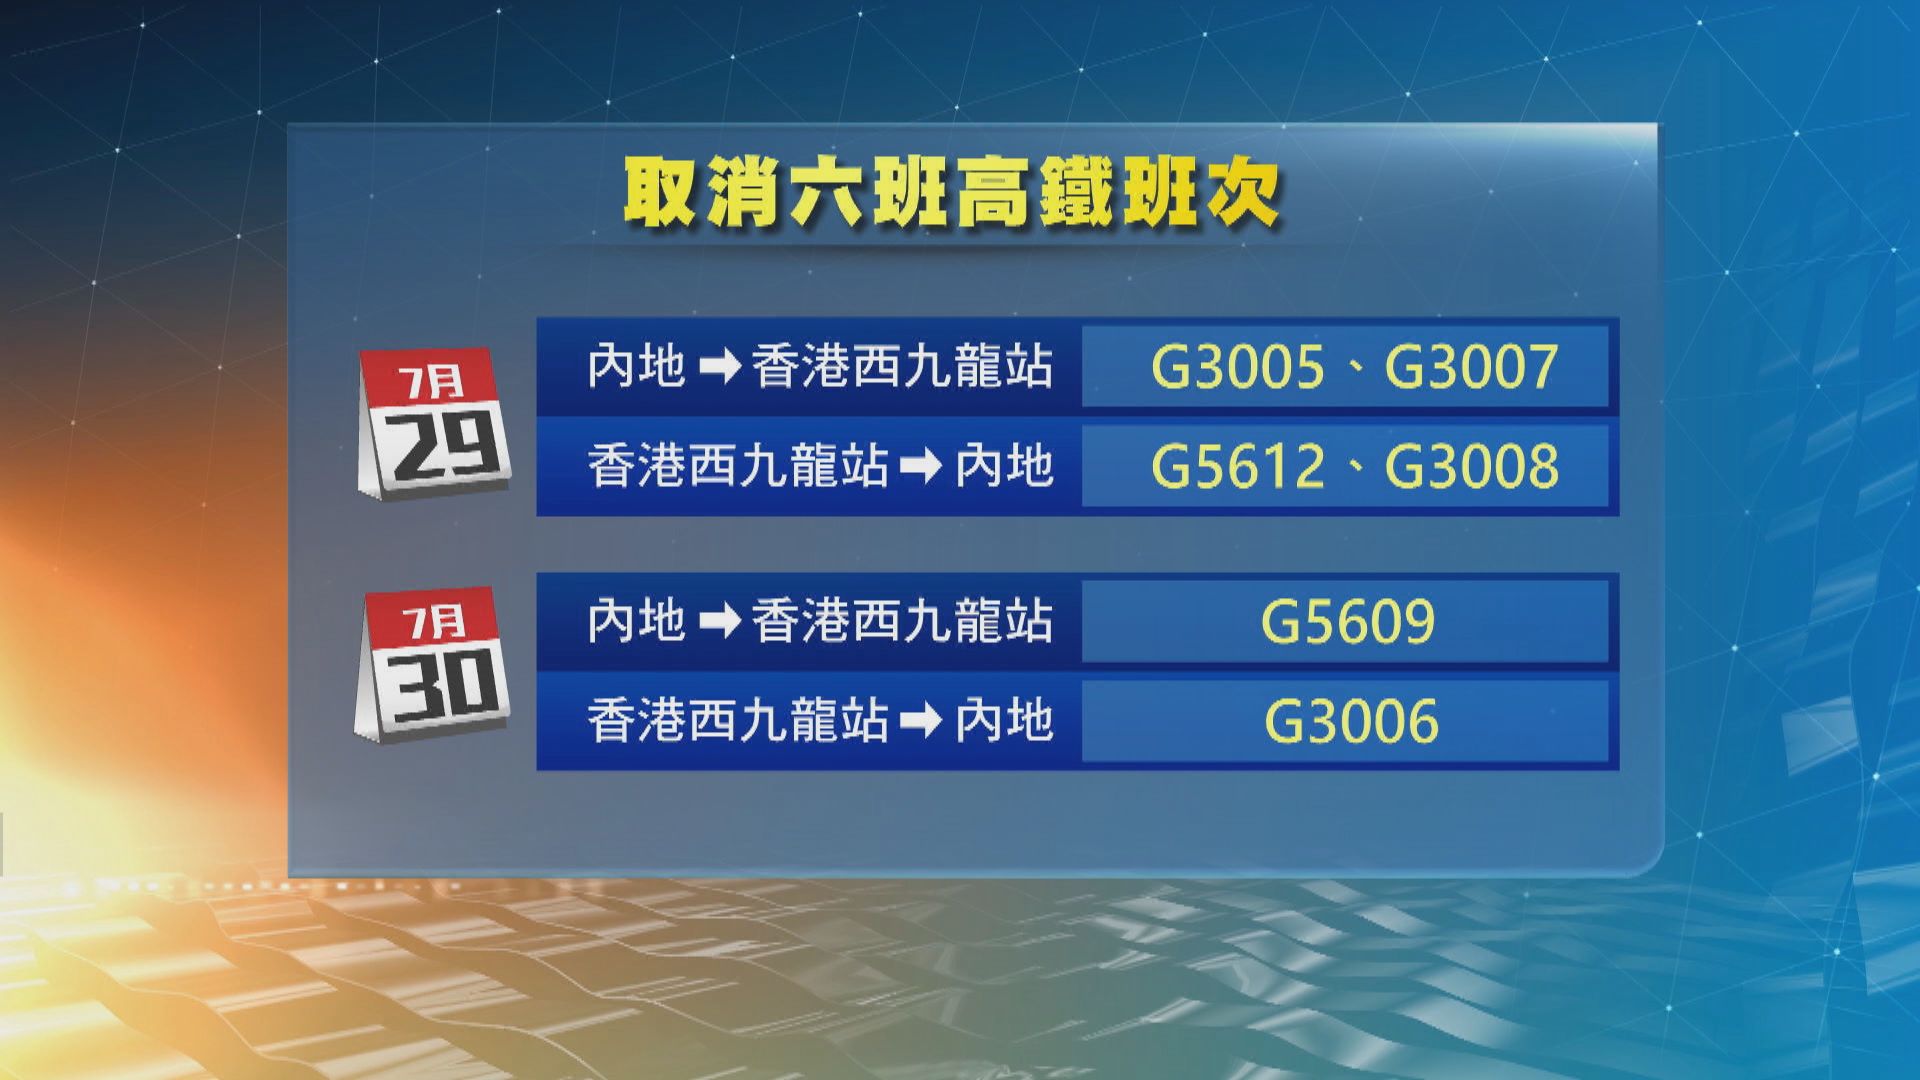 天氣惡劣 西九往返廈門及深圳北6班次取消